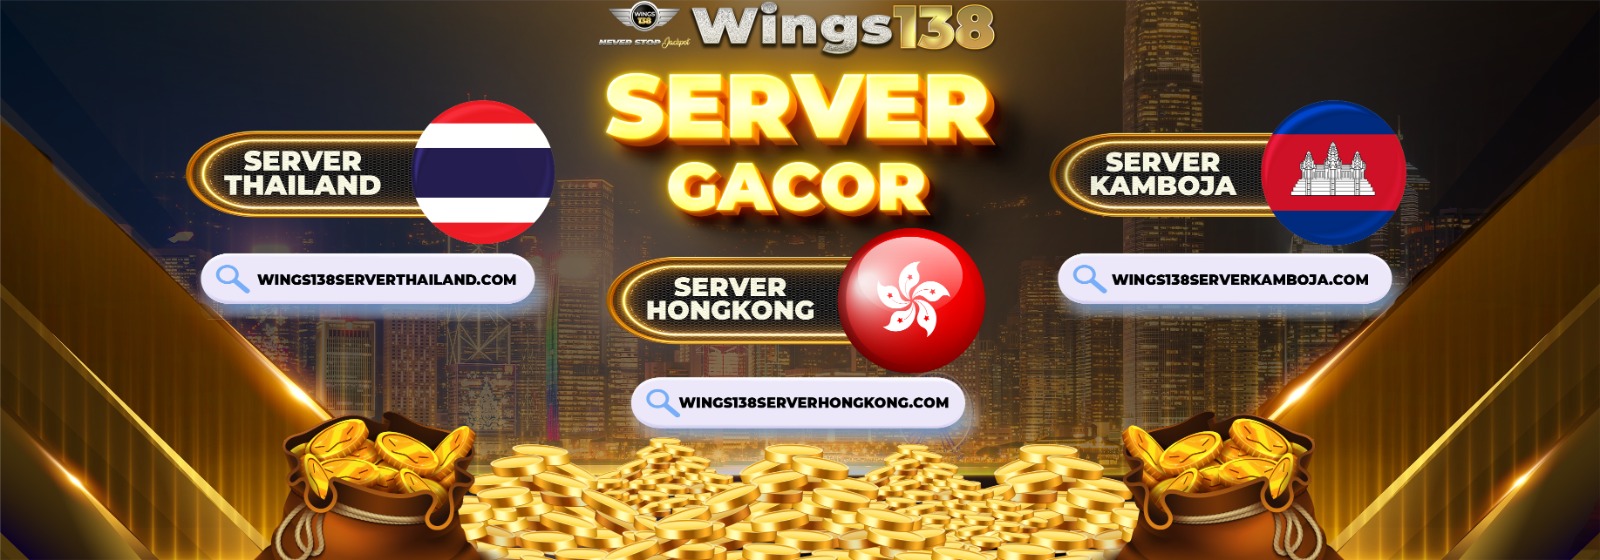 server gacor